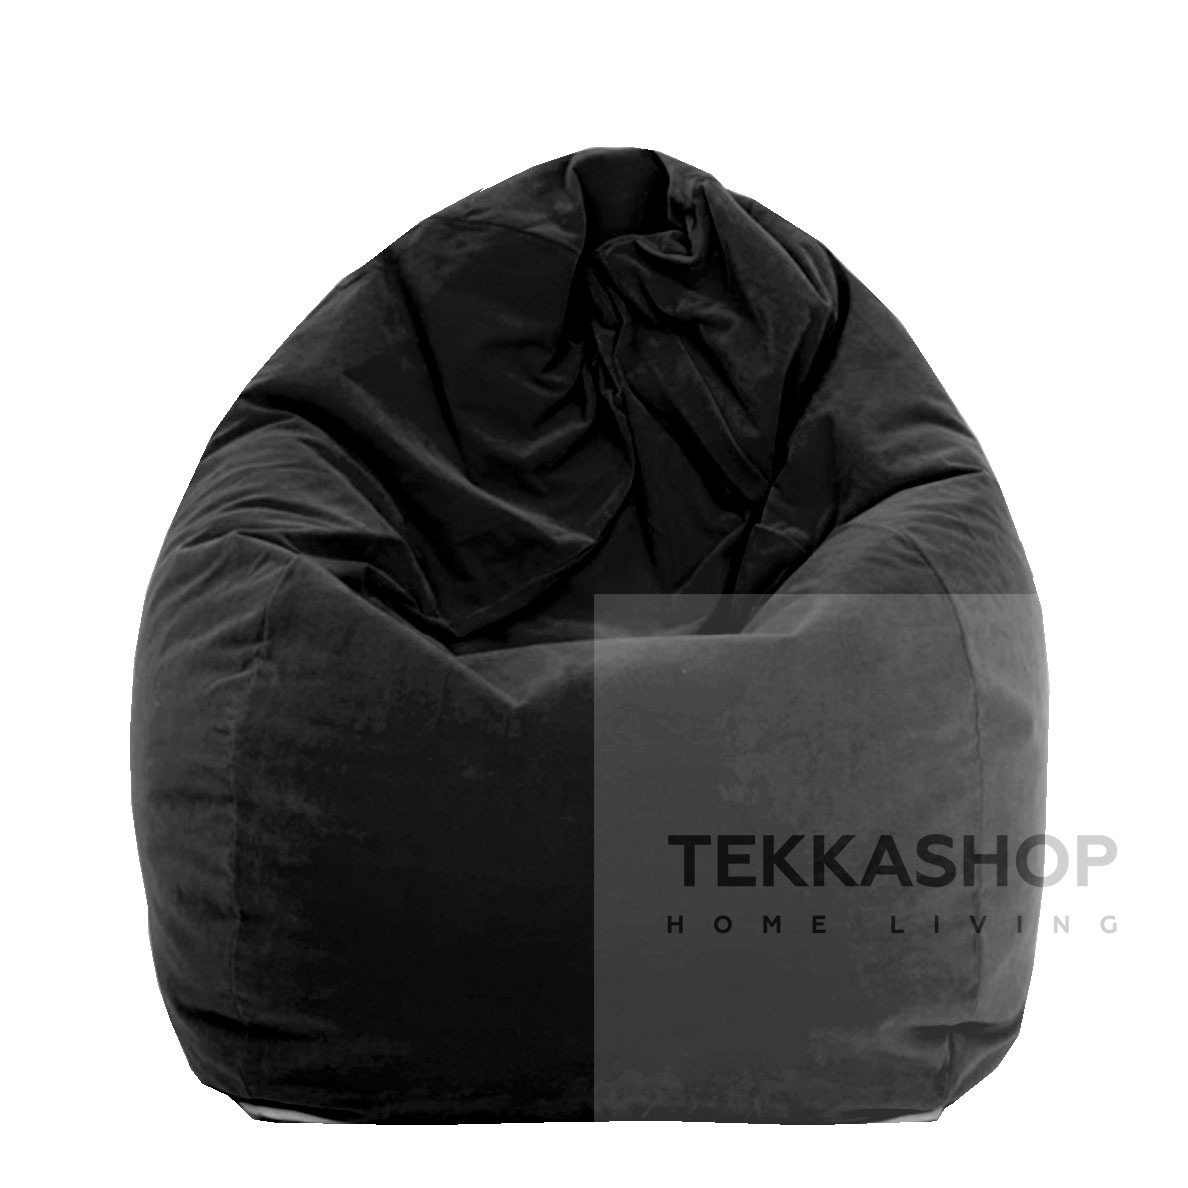 Tekkashop SSBBBL Adult Size XL (2.5 kg) Velvet Fabric Bean Bag - Black  (Ready Stock) – Tekkashop Furniture | Commercial & Residential Furniture |  Shop Furniture Online @ Home | Malaysia